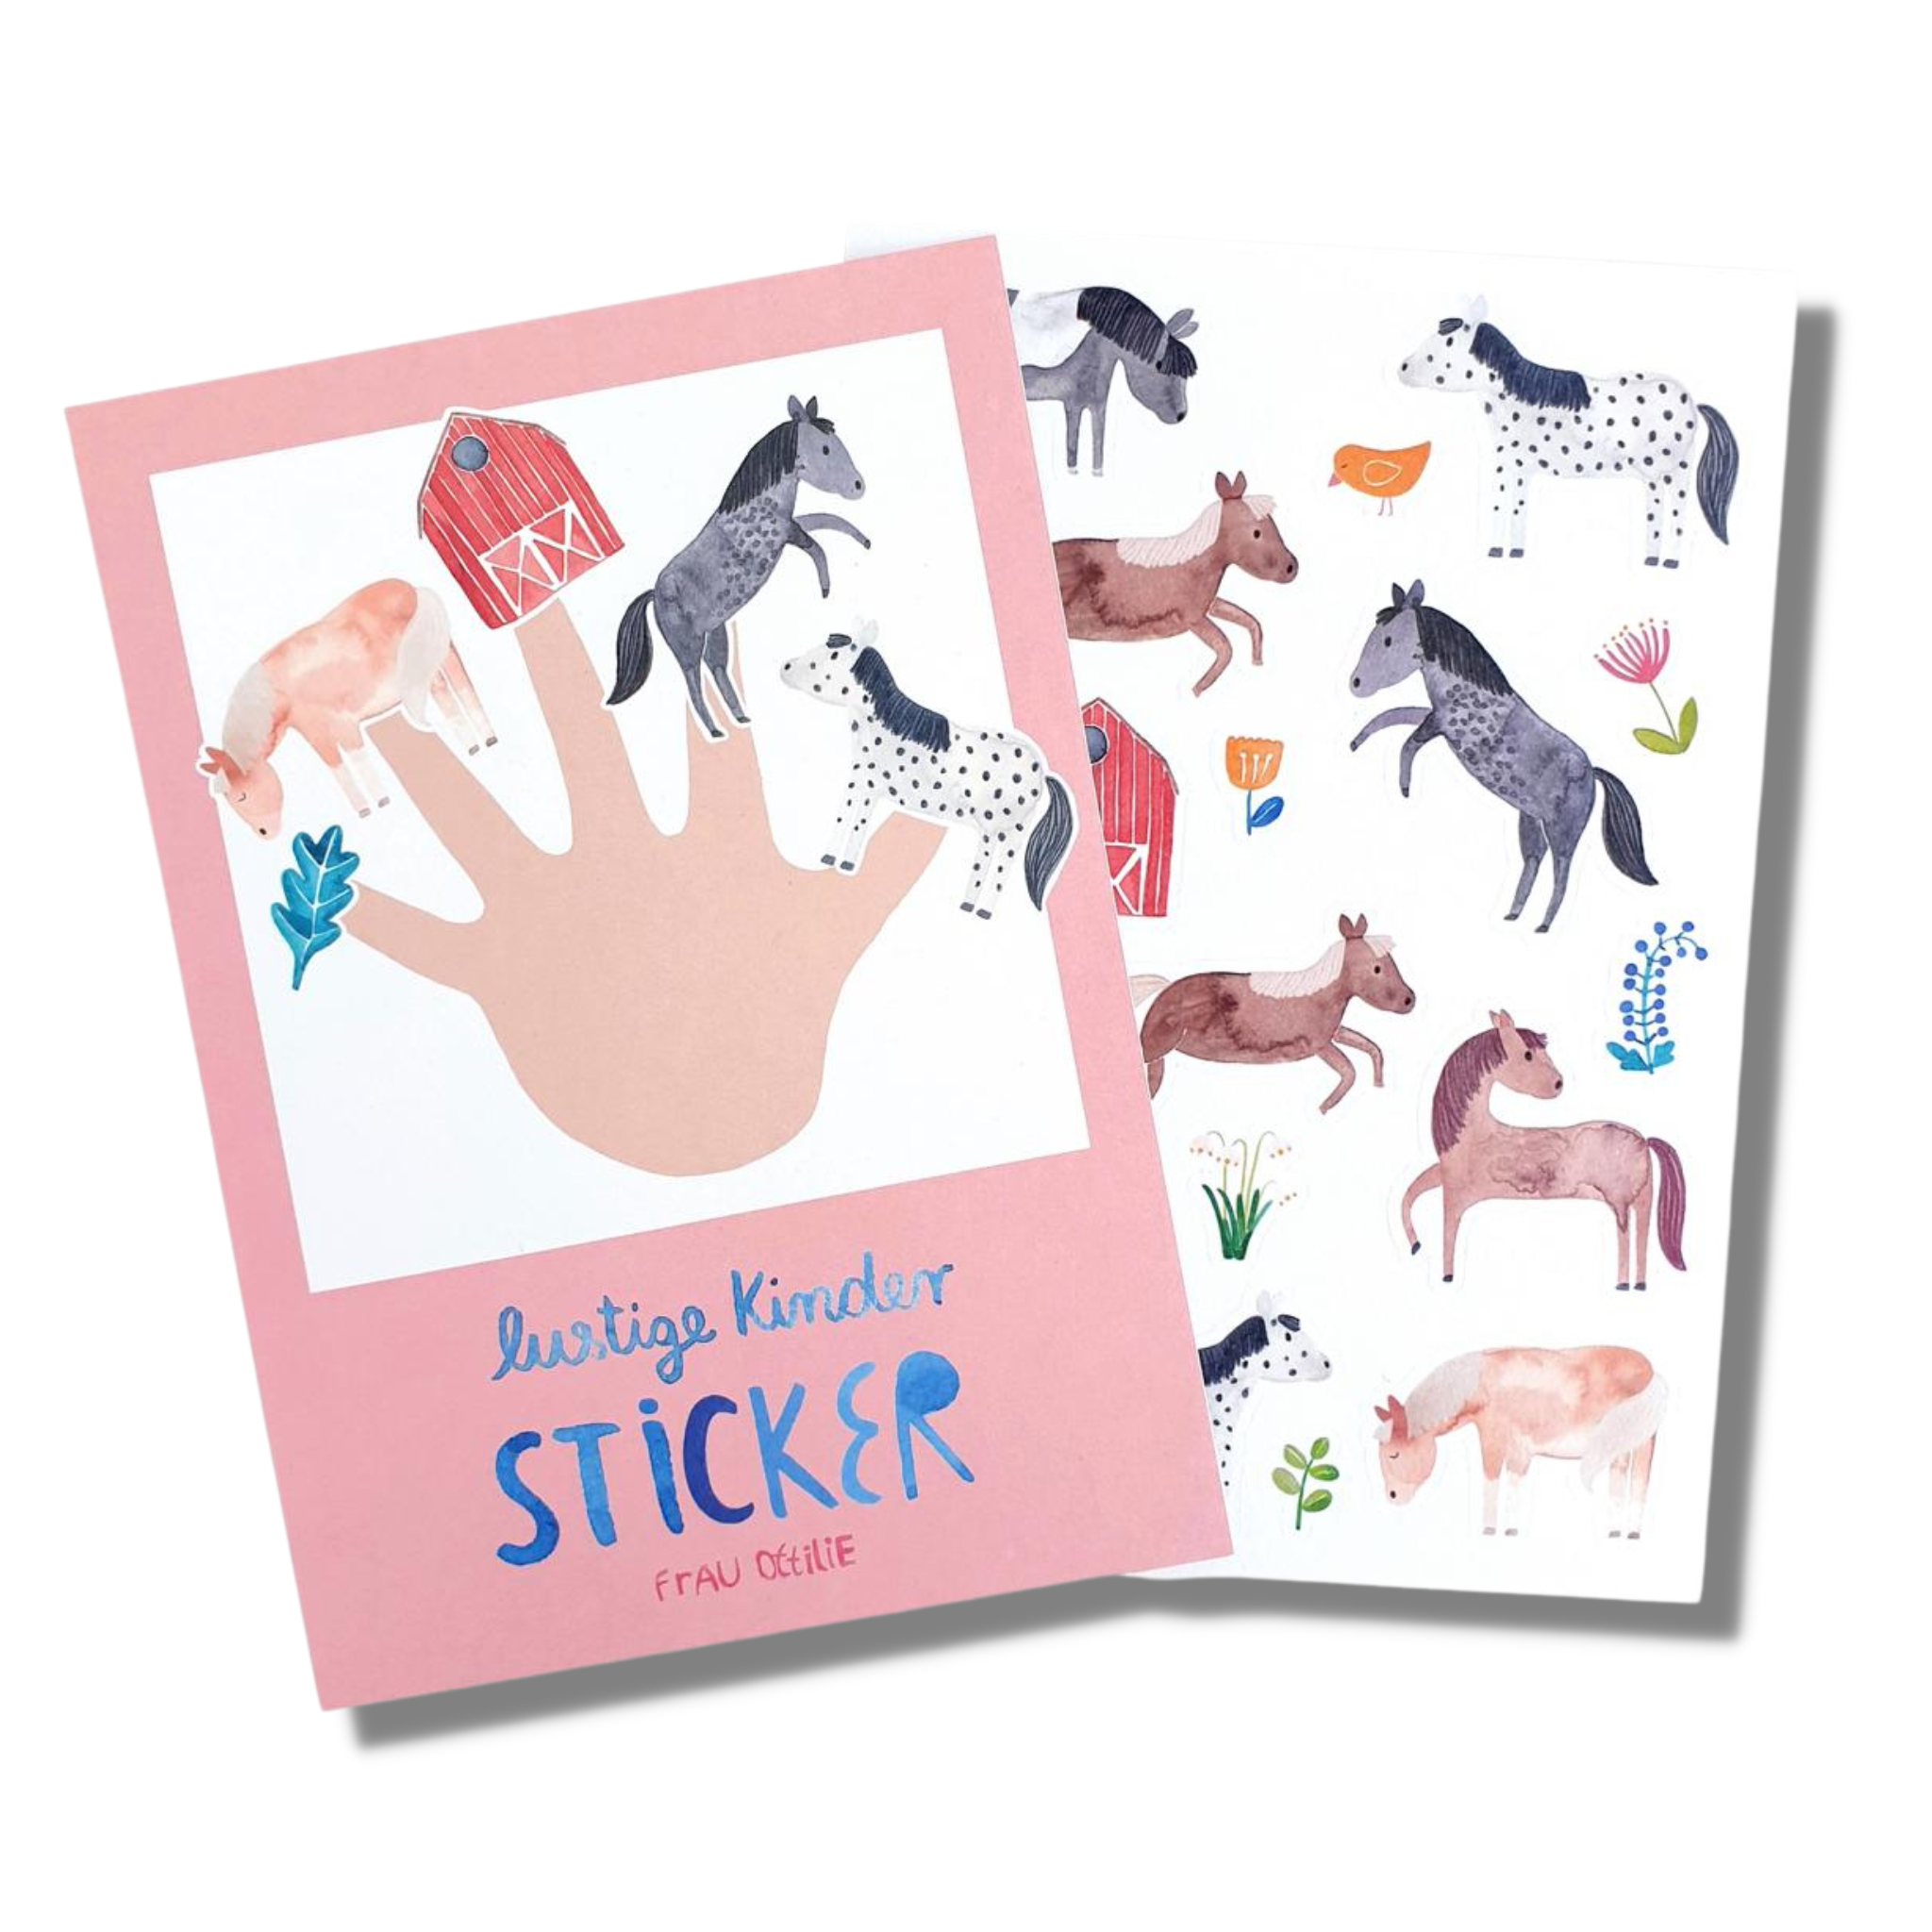 Sticker "Pferde" für Kinder von Frau Ottilie